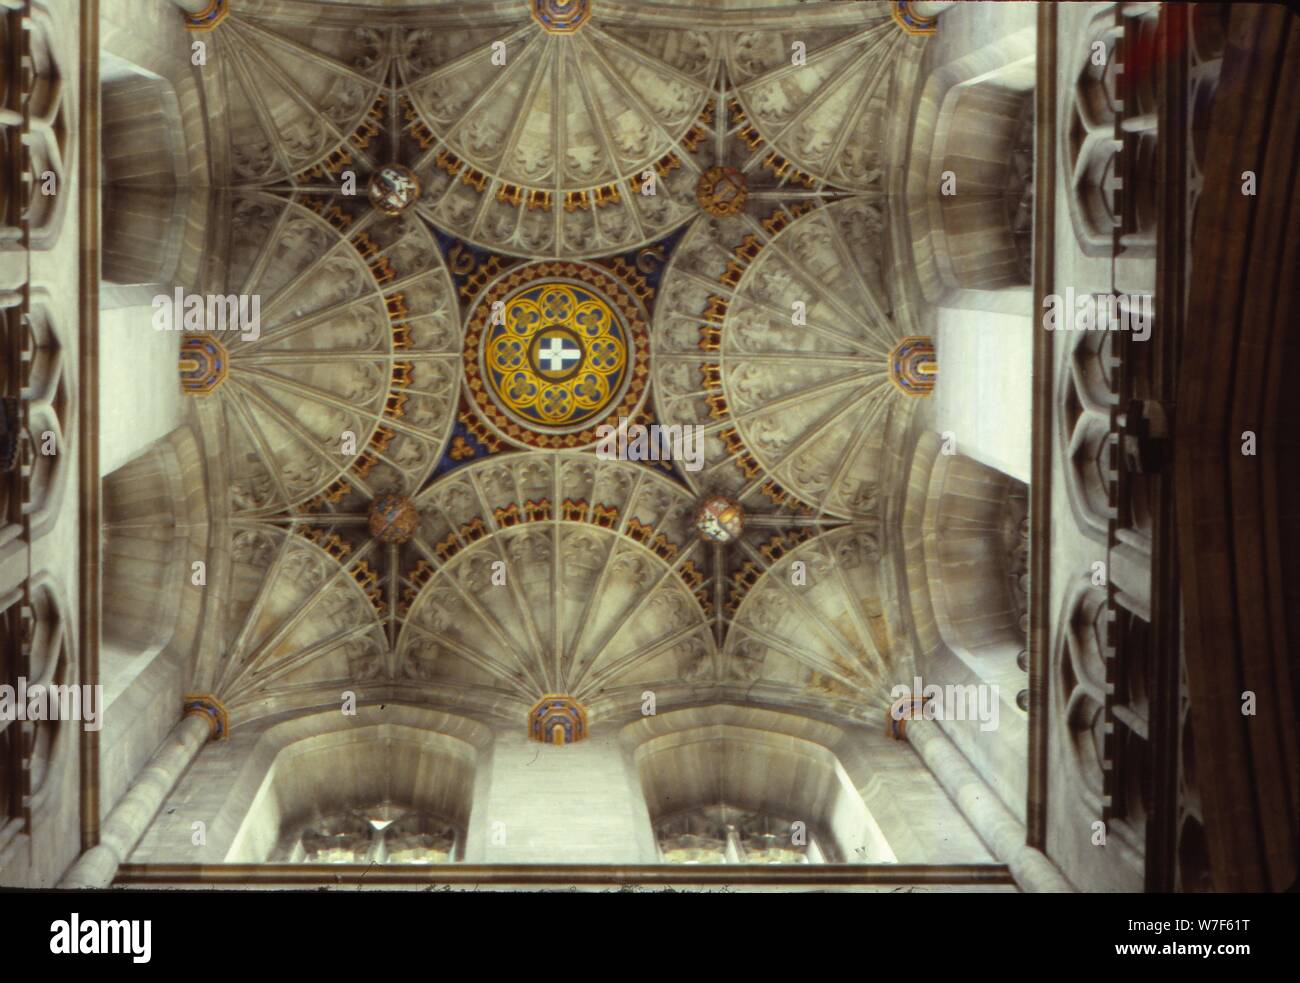 La Cathédrale de Canterbury en voltige de ventilateur, Kent, Angleterre, 20e siècle. Artiste : CM Dixon. Banque D'Images